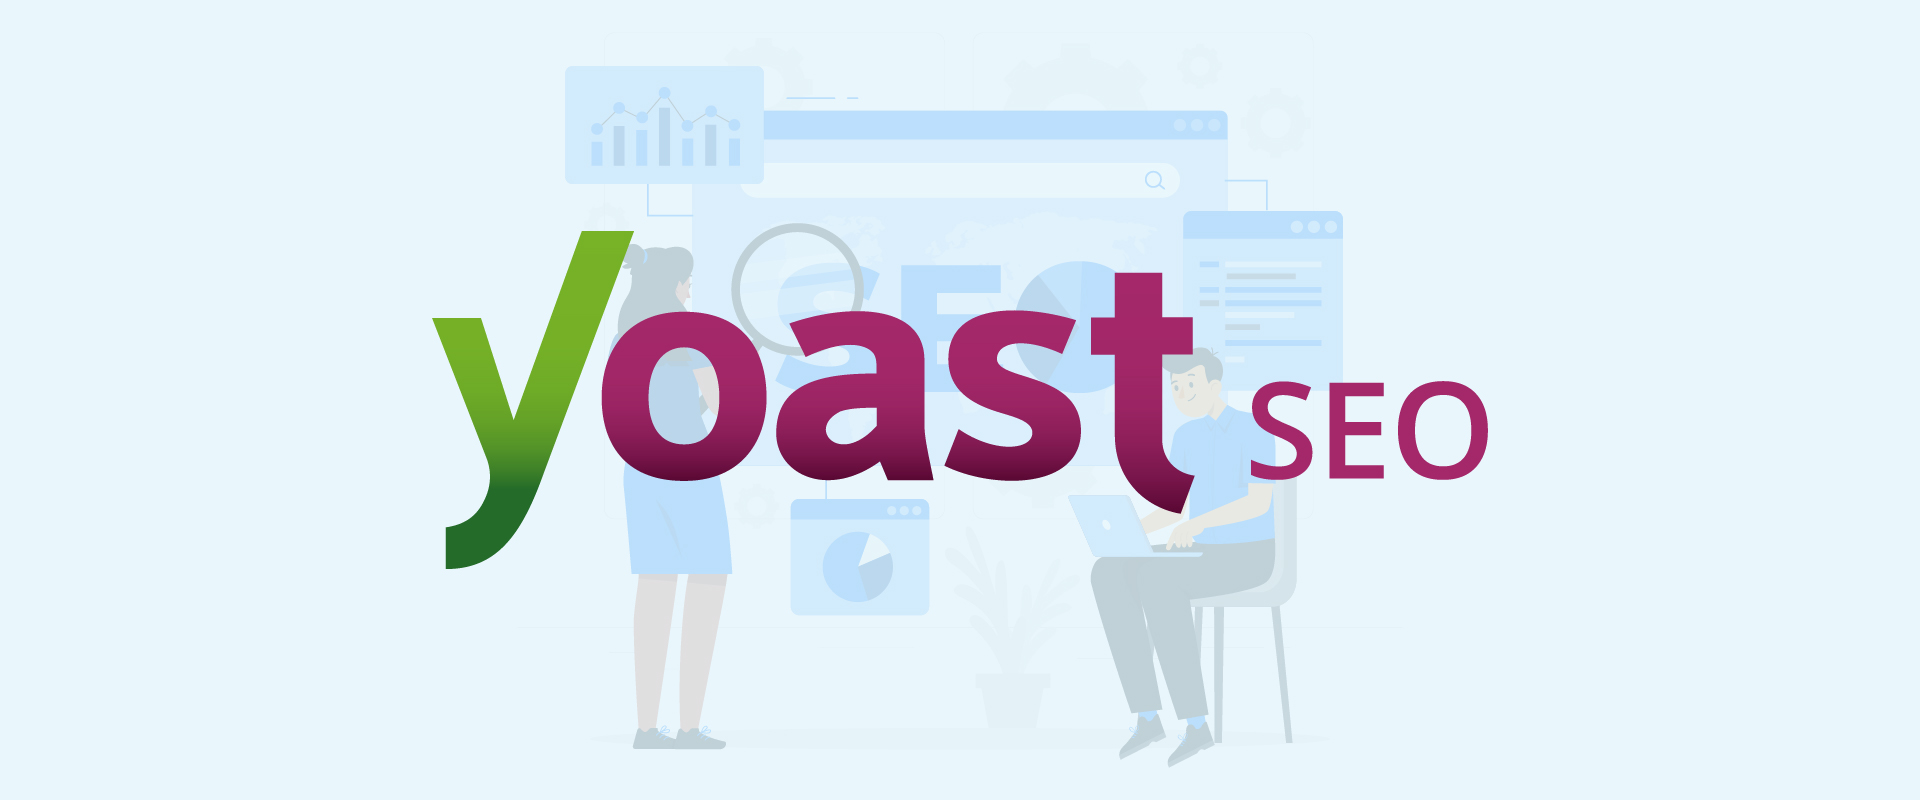 En este momento estás viendo Maximiza tu Posicionamiento en Buscadores con Yoast SEO en WordPress